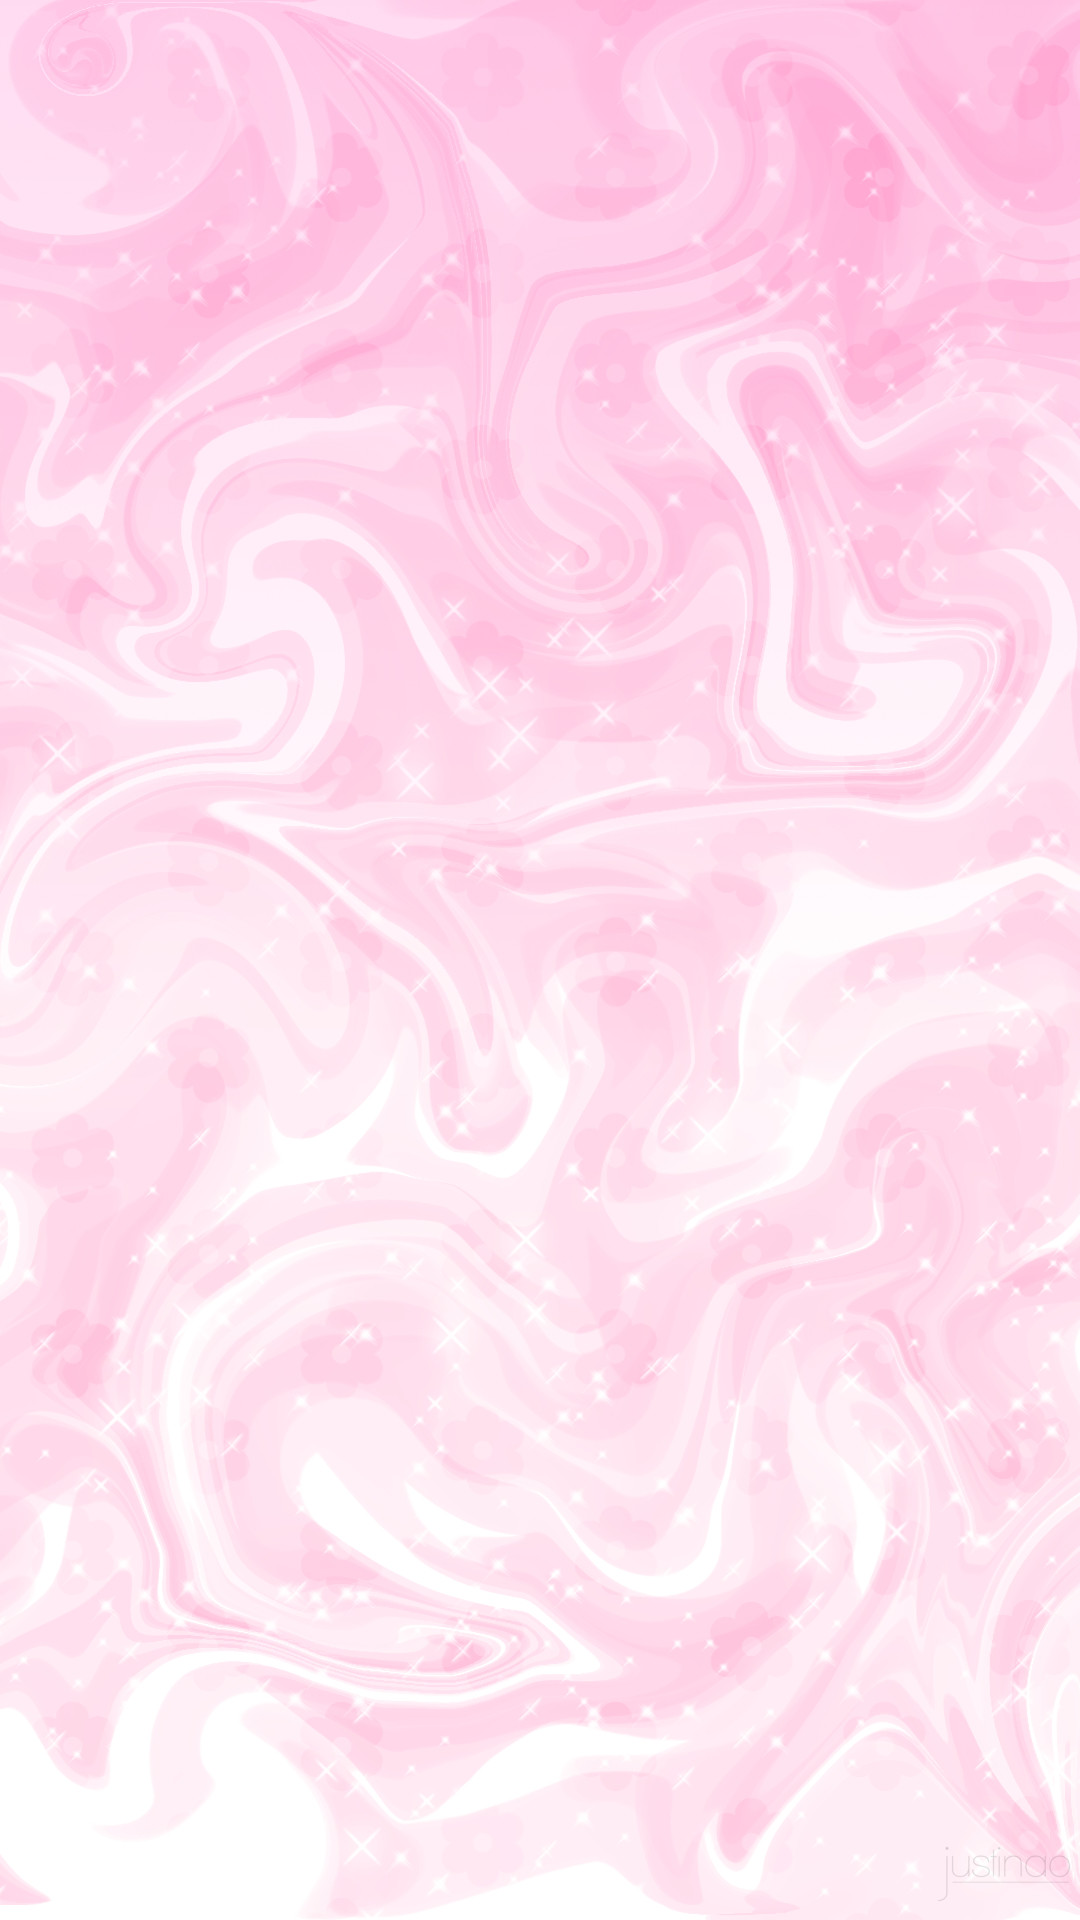 43+] Pink Lock Screen Wallpapers - WallpaperSafari